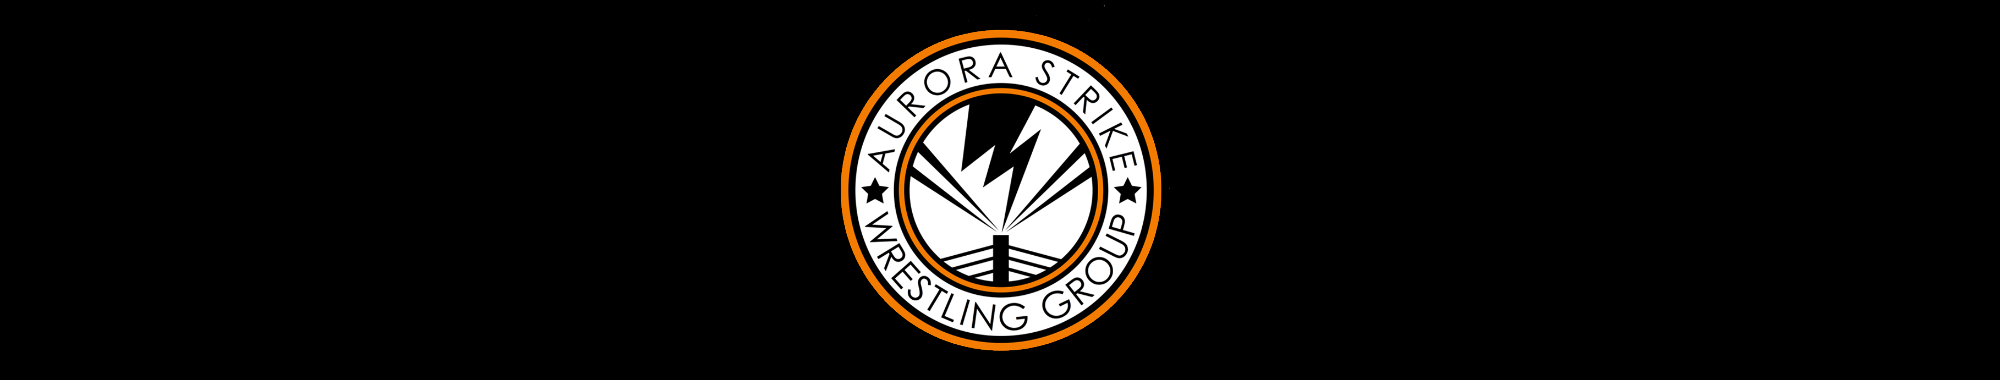 Aurora Strike Wrestling Group: Dark Match